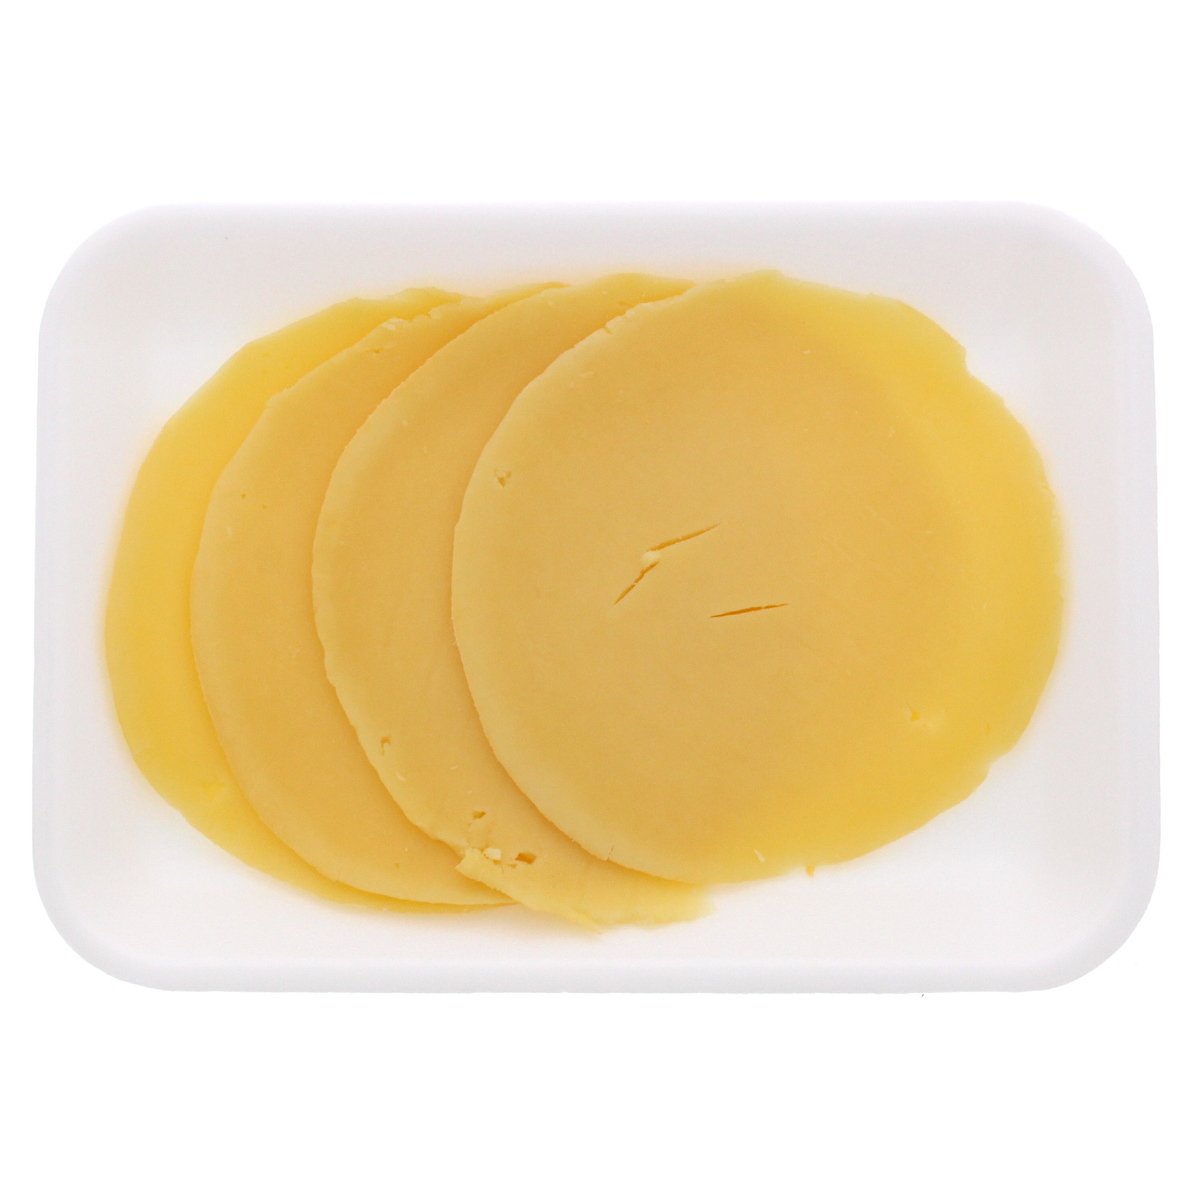 اشتري قم بشراء كرات جبنة فريكو ايدام 250 جم تقريبا Online at Best Price من الموقع - من لولو هايبر ماركت Dutch Cheese في السعودية